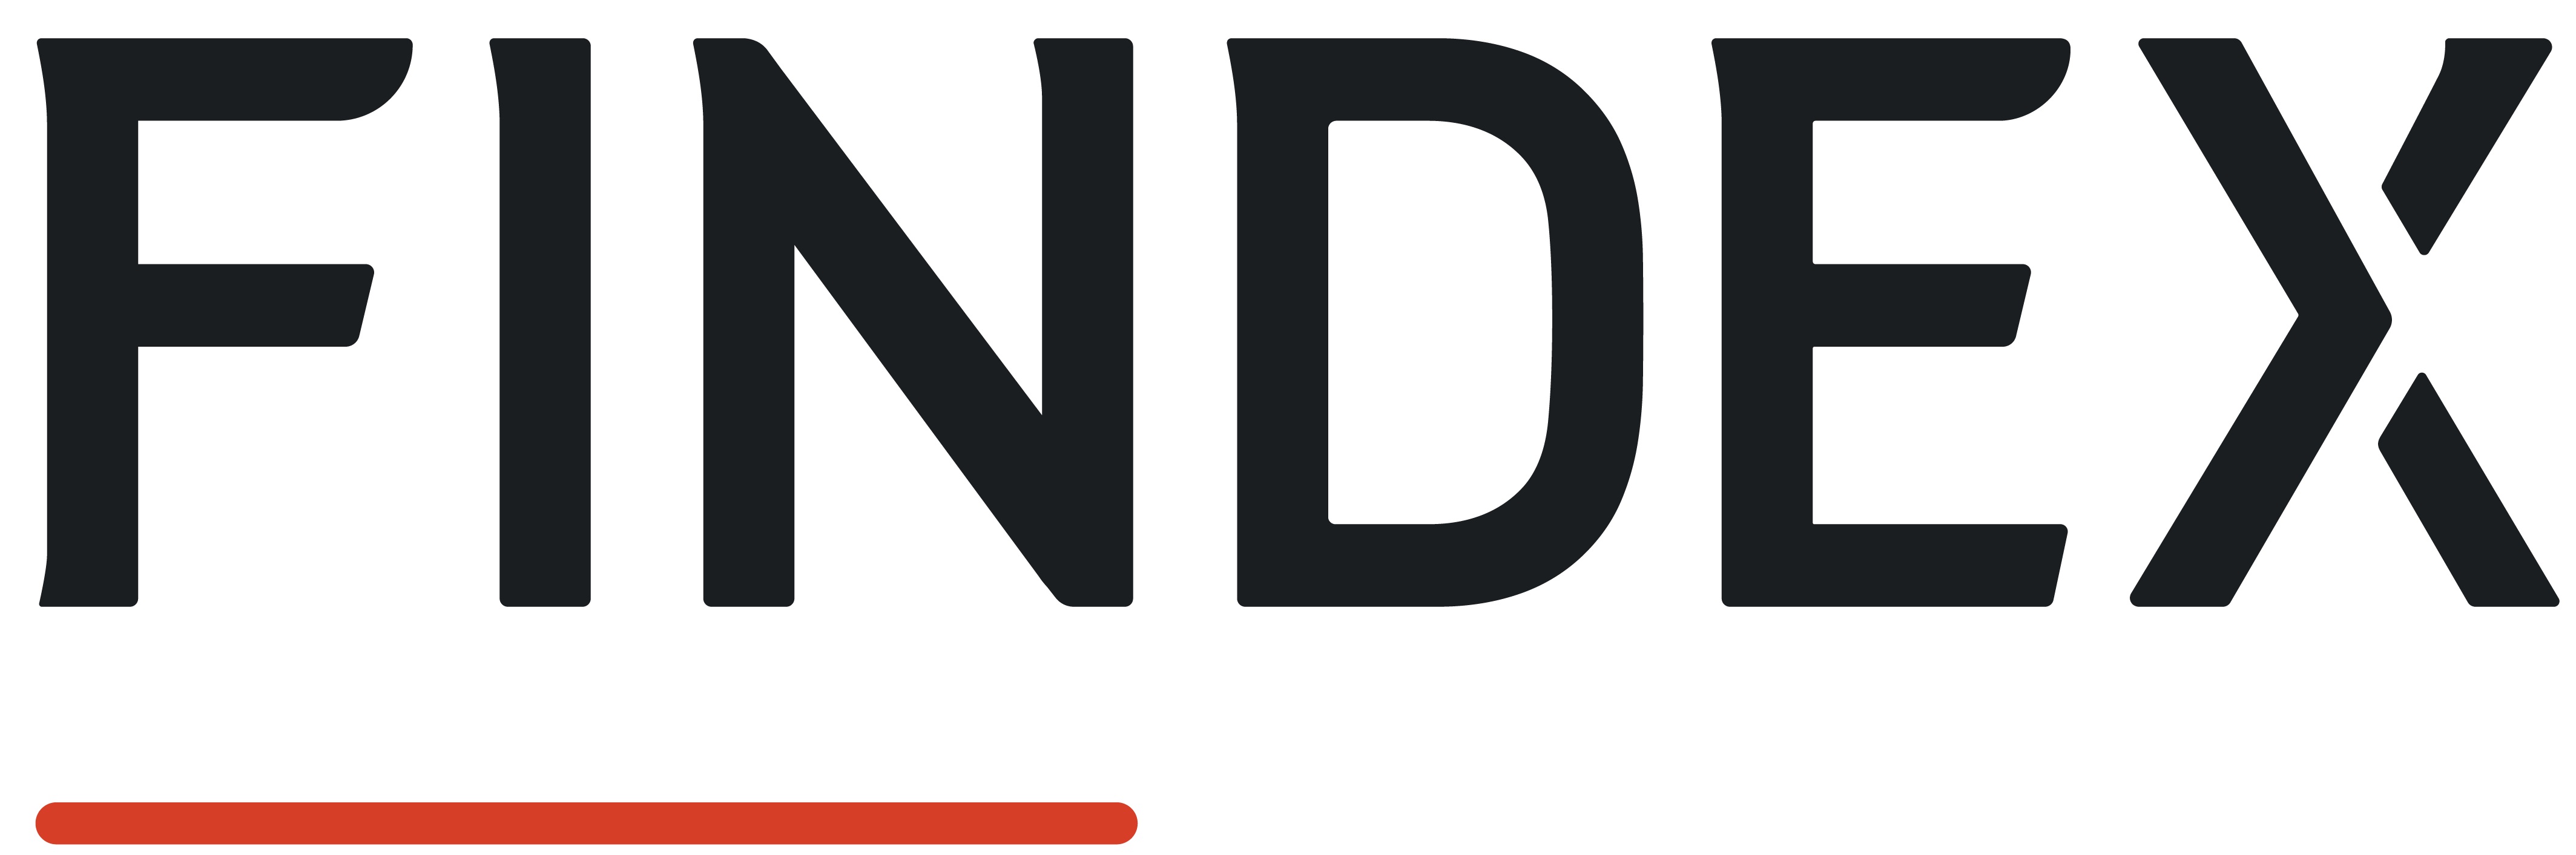 Findex_Logo_MidnightBlue_Dash (002)